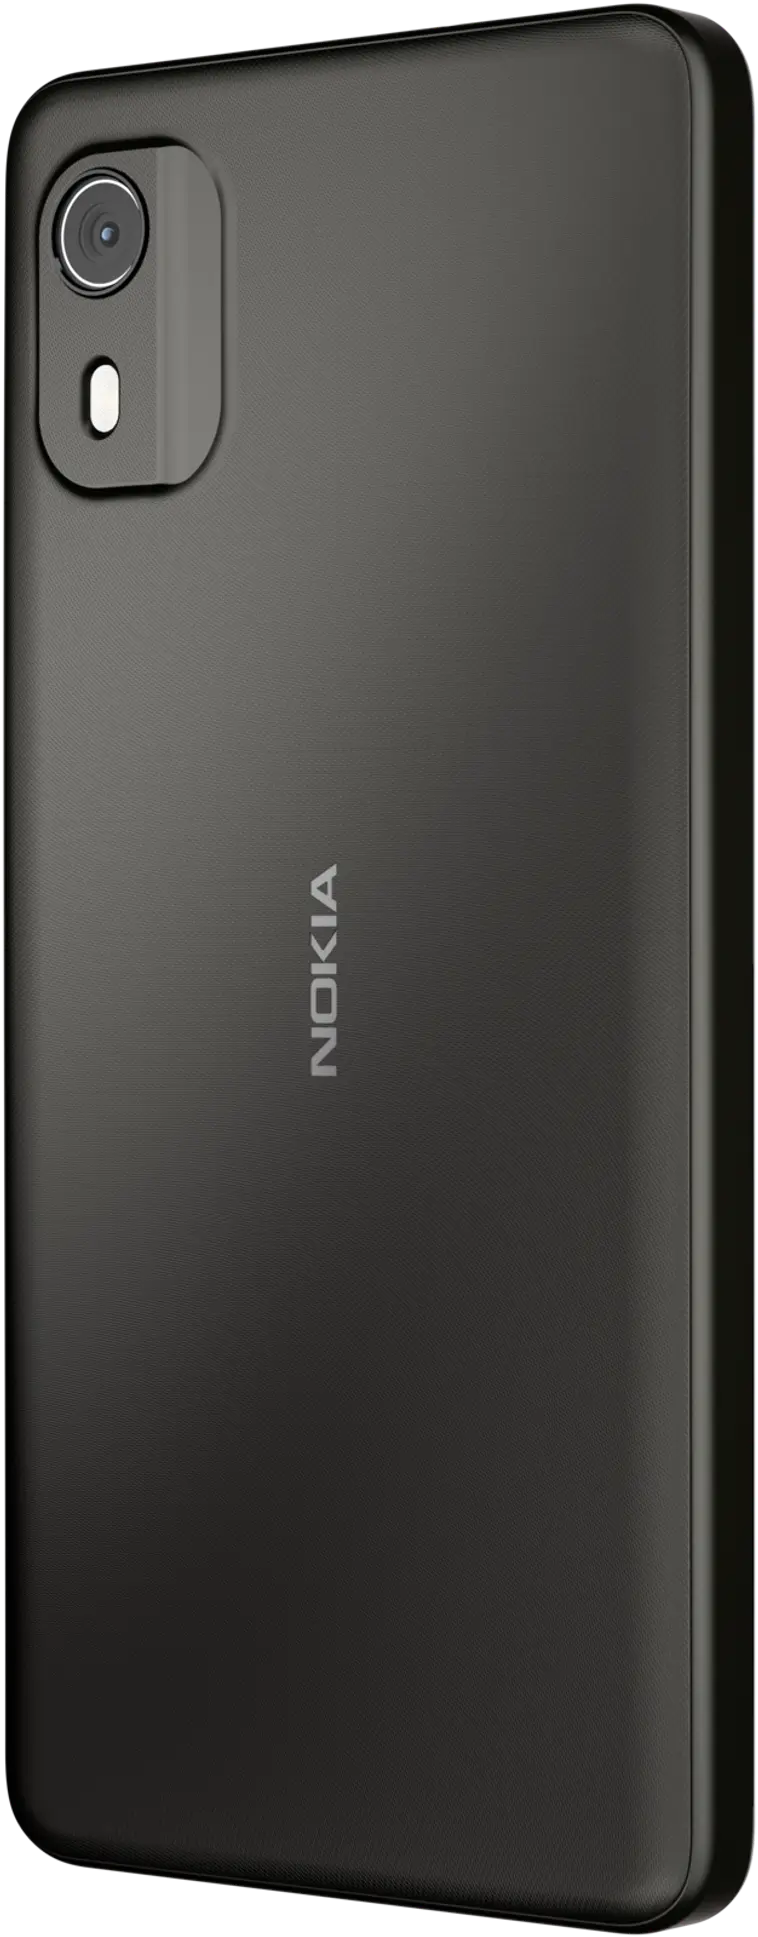 Nokia C02 älypuhelin hiilenharmaa - 6